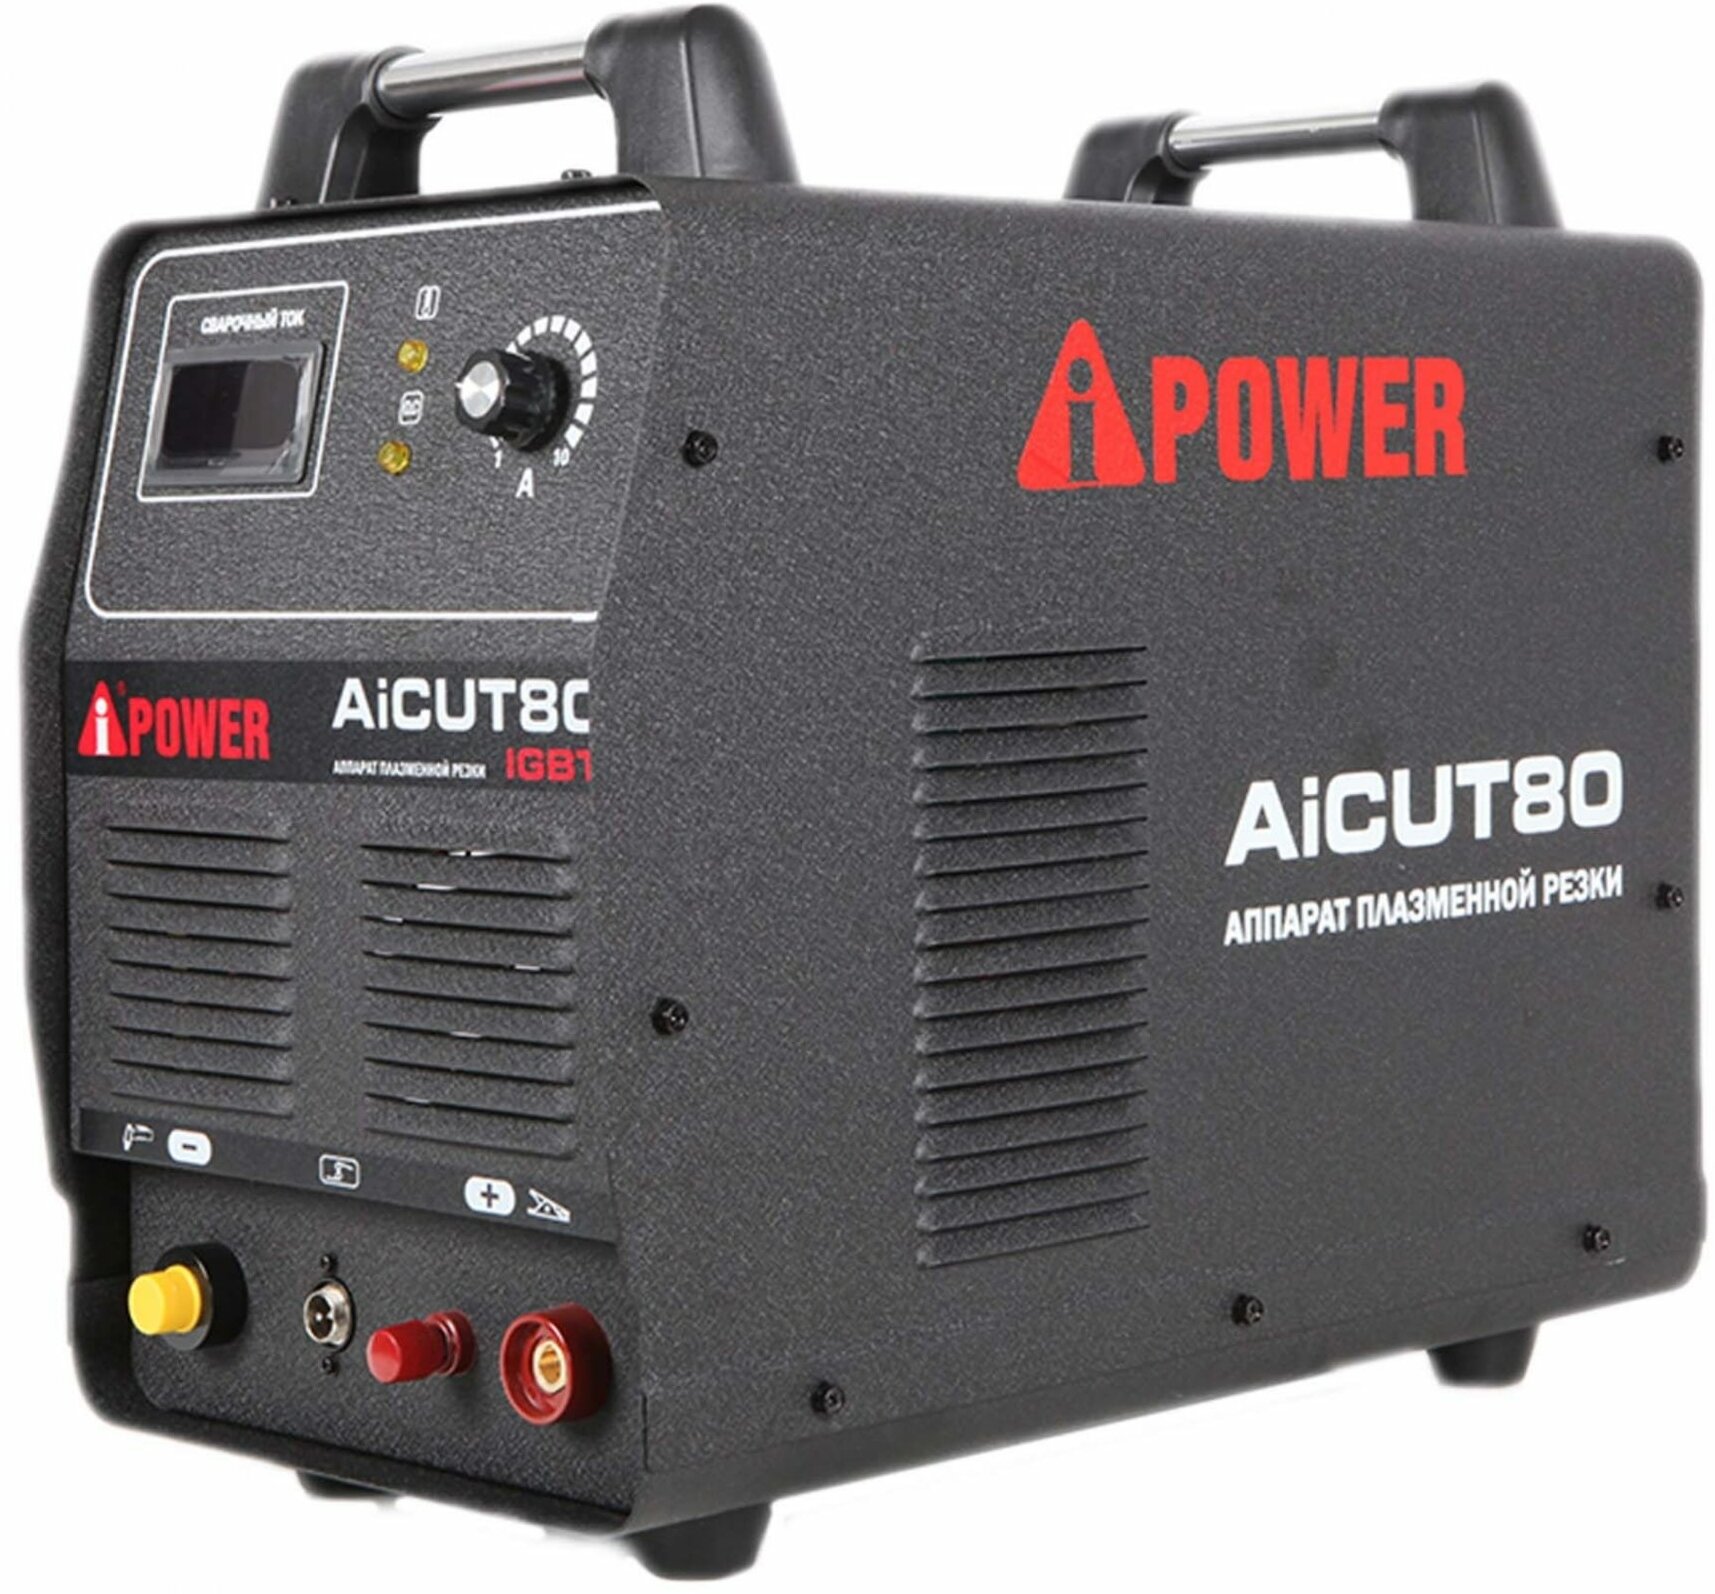    A-iPower AICUT80 (63080)